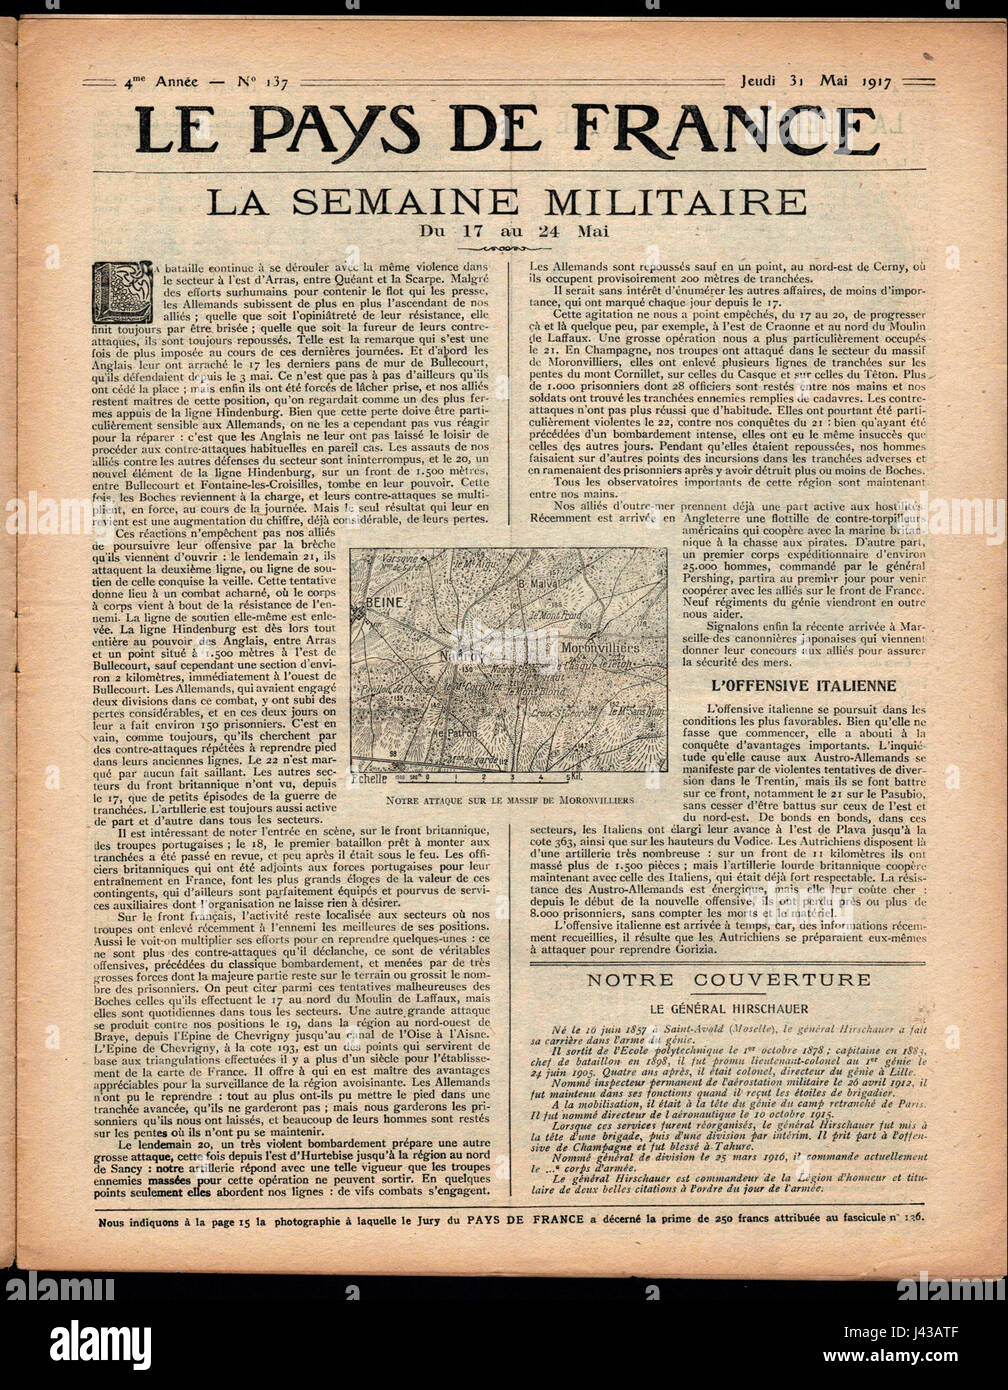 Le Pays de France, No 137, scan05, page3 Stock Photo